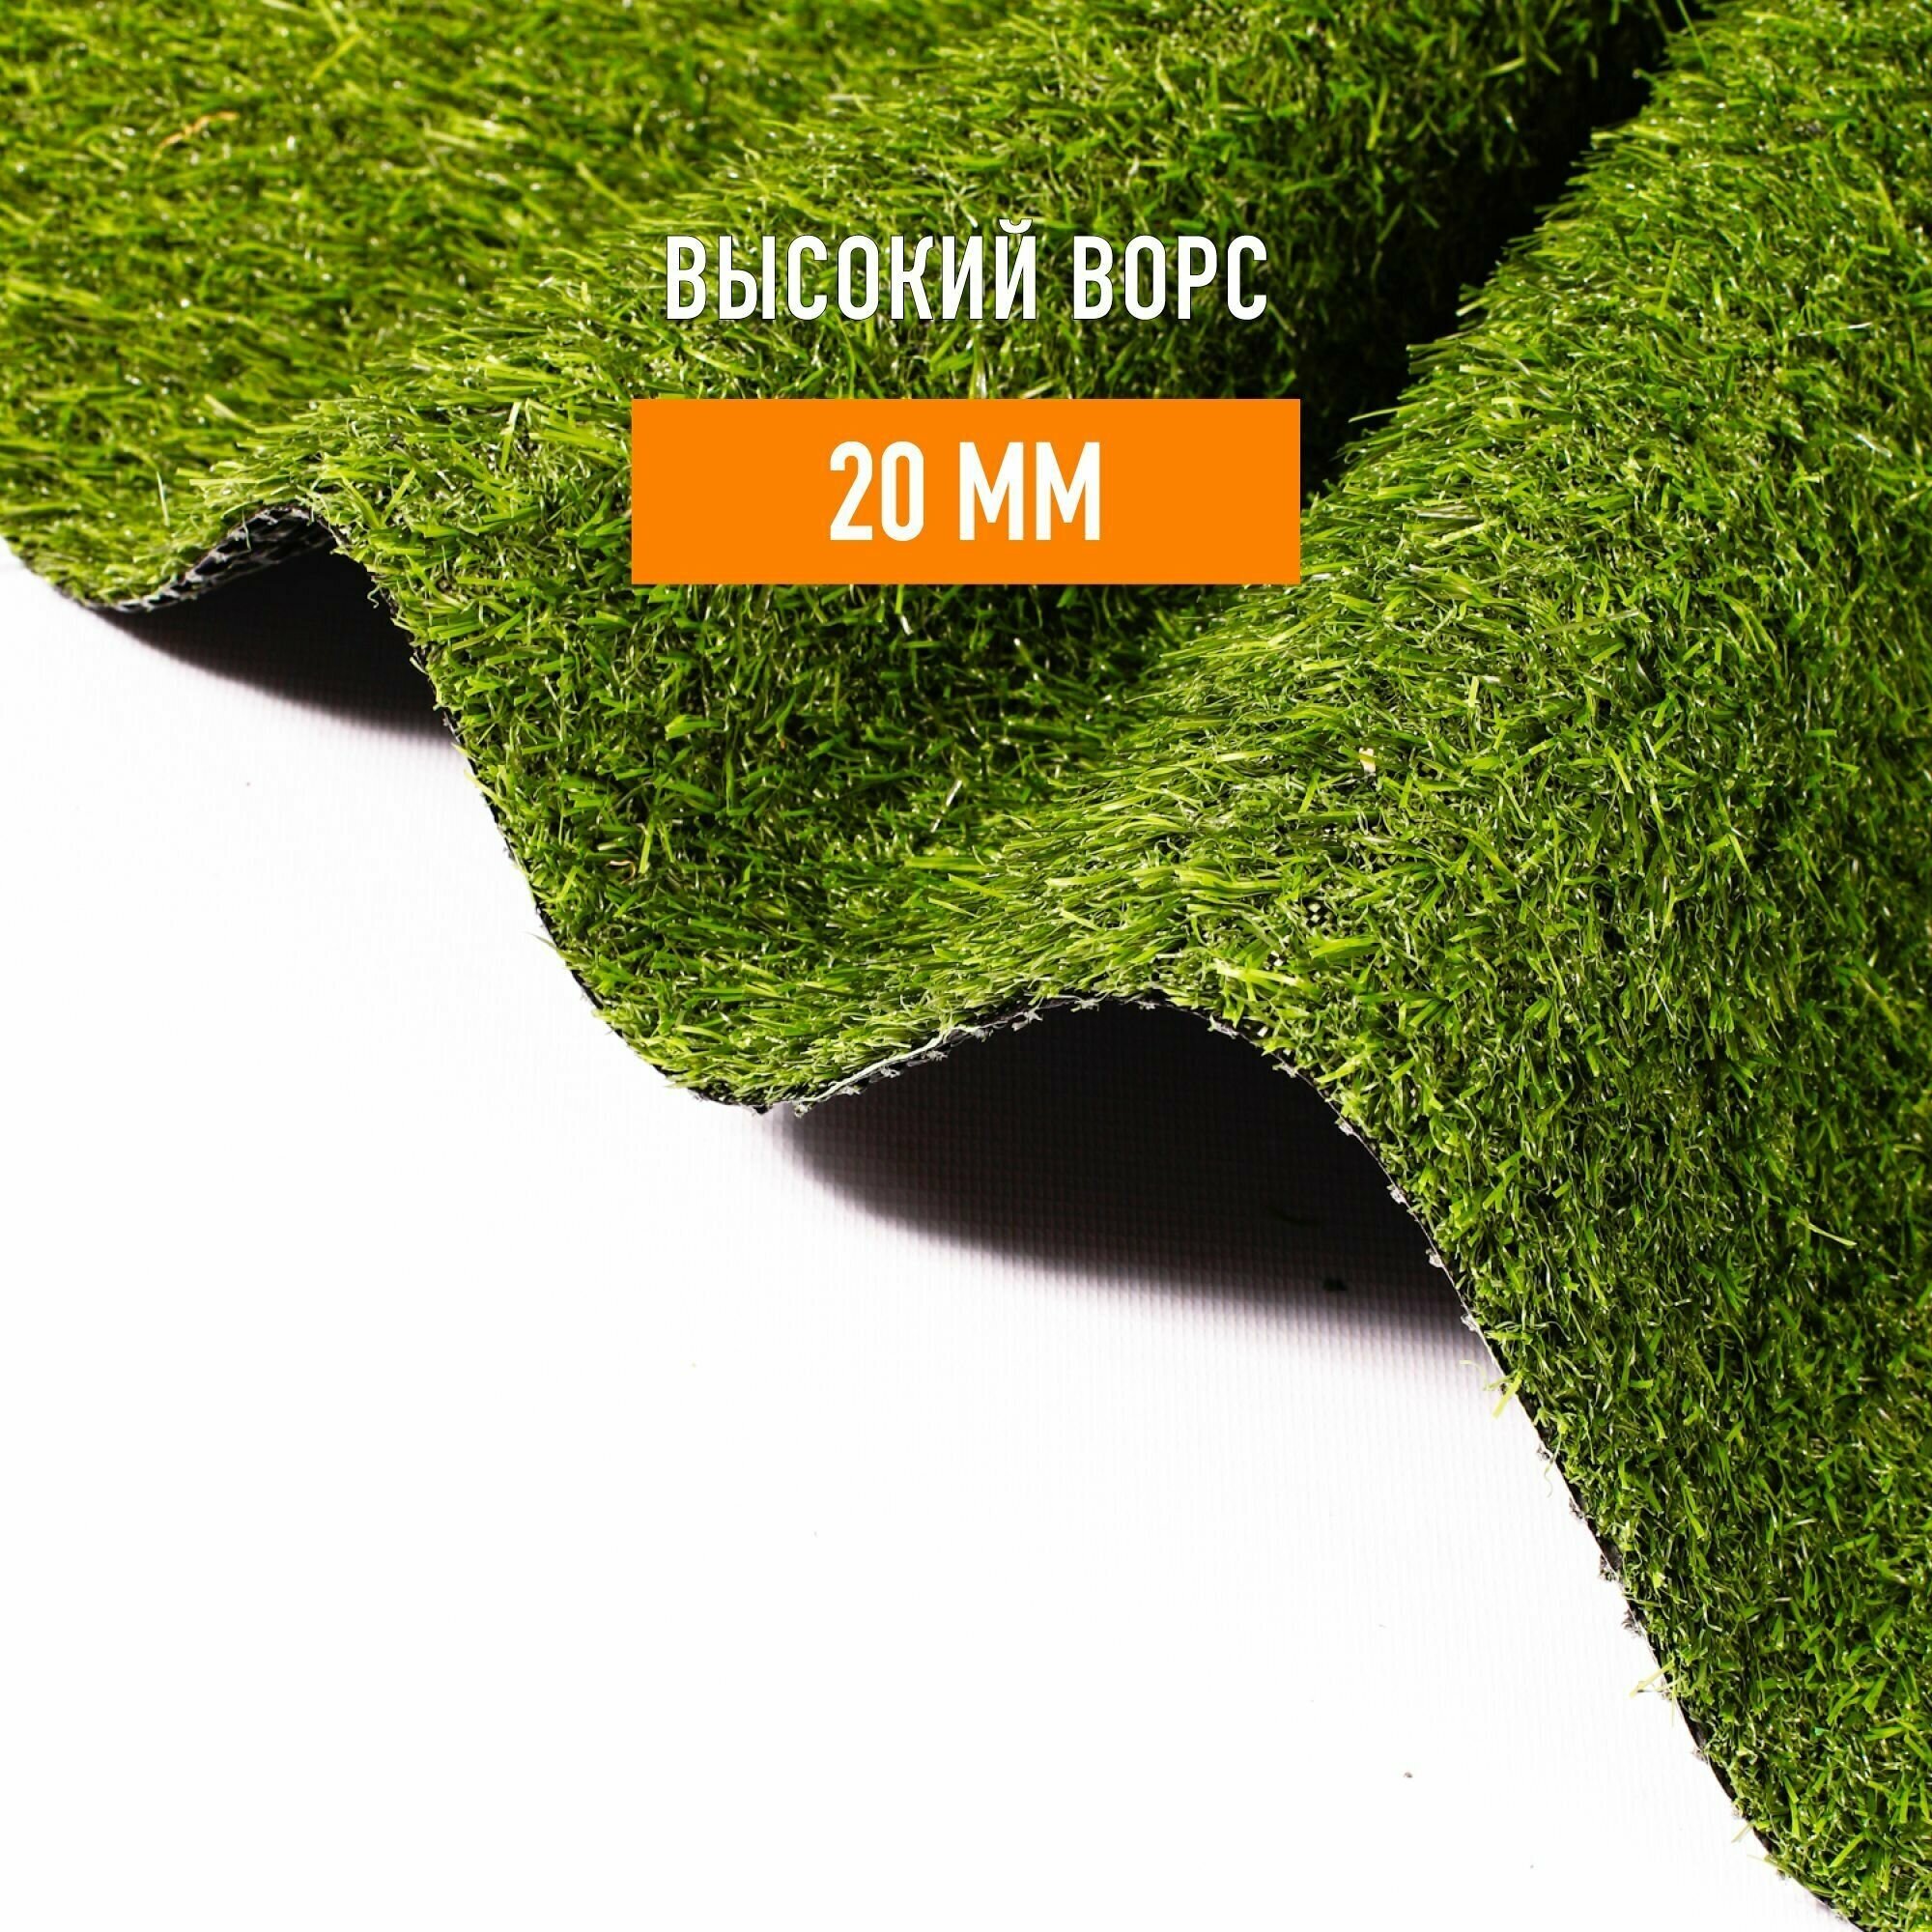 Искусственный газон в рулоне для декора 1,2х6,5м Premium Grass 20 Green, высота ворса 20 мм. Искусственная трава. - фотография № 2